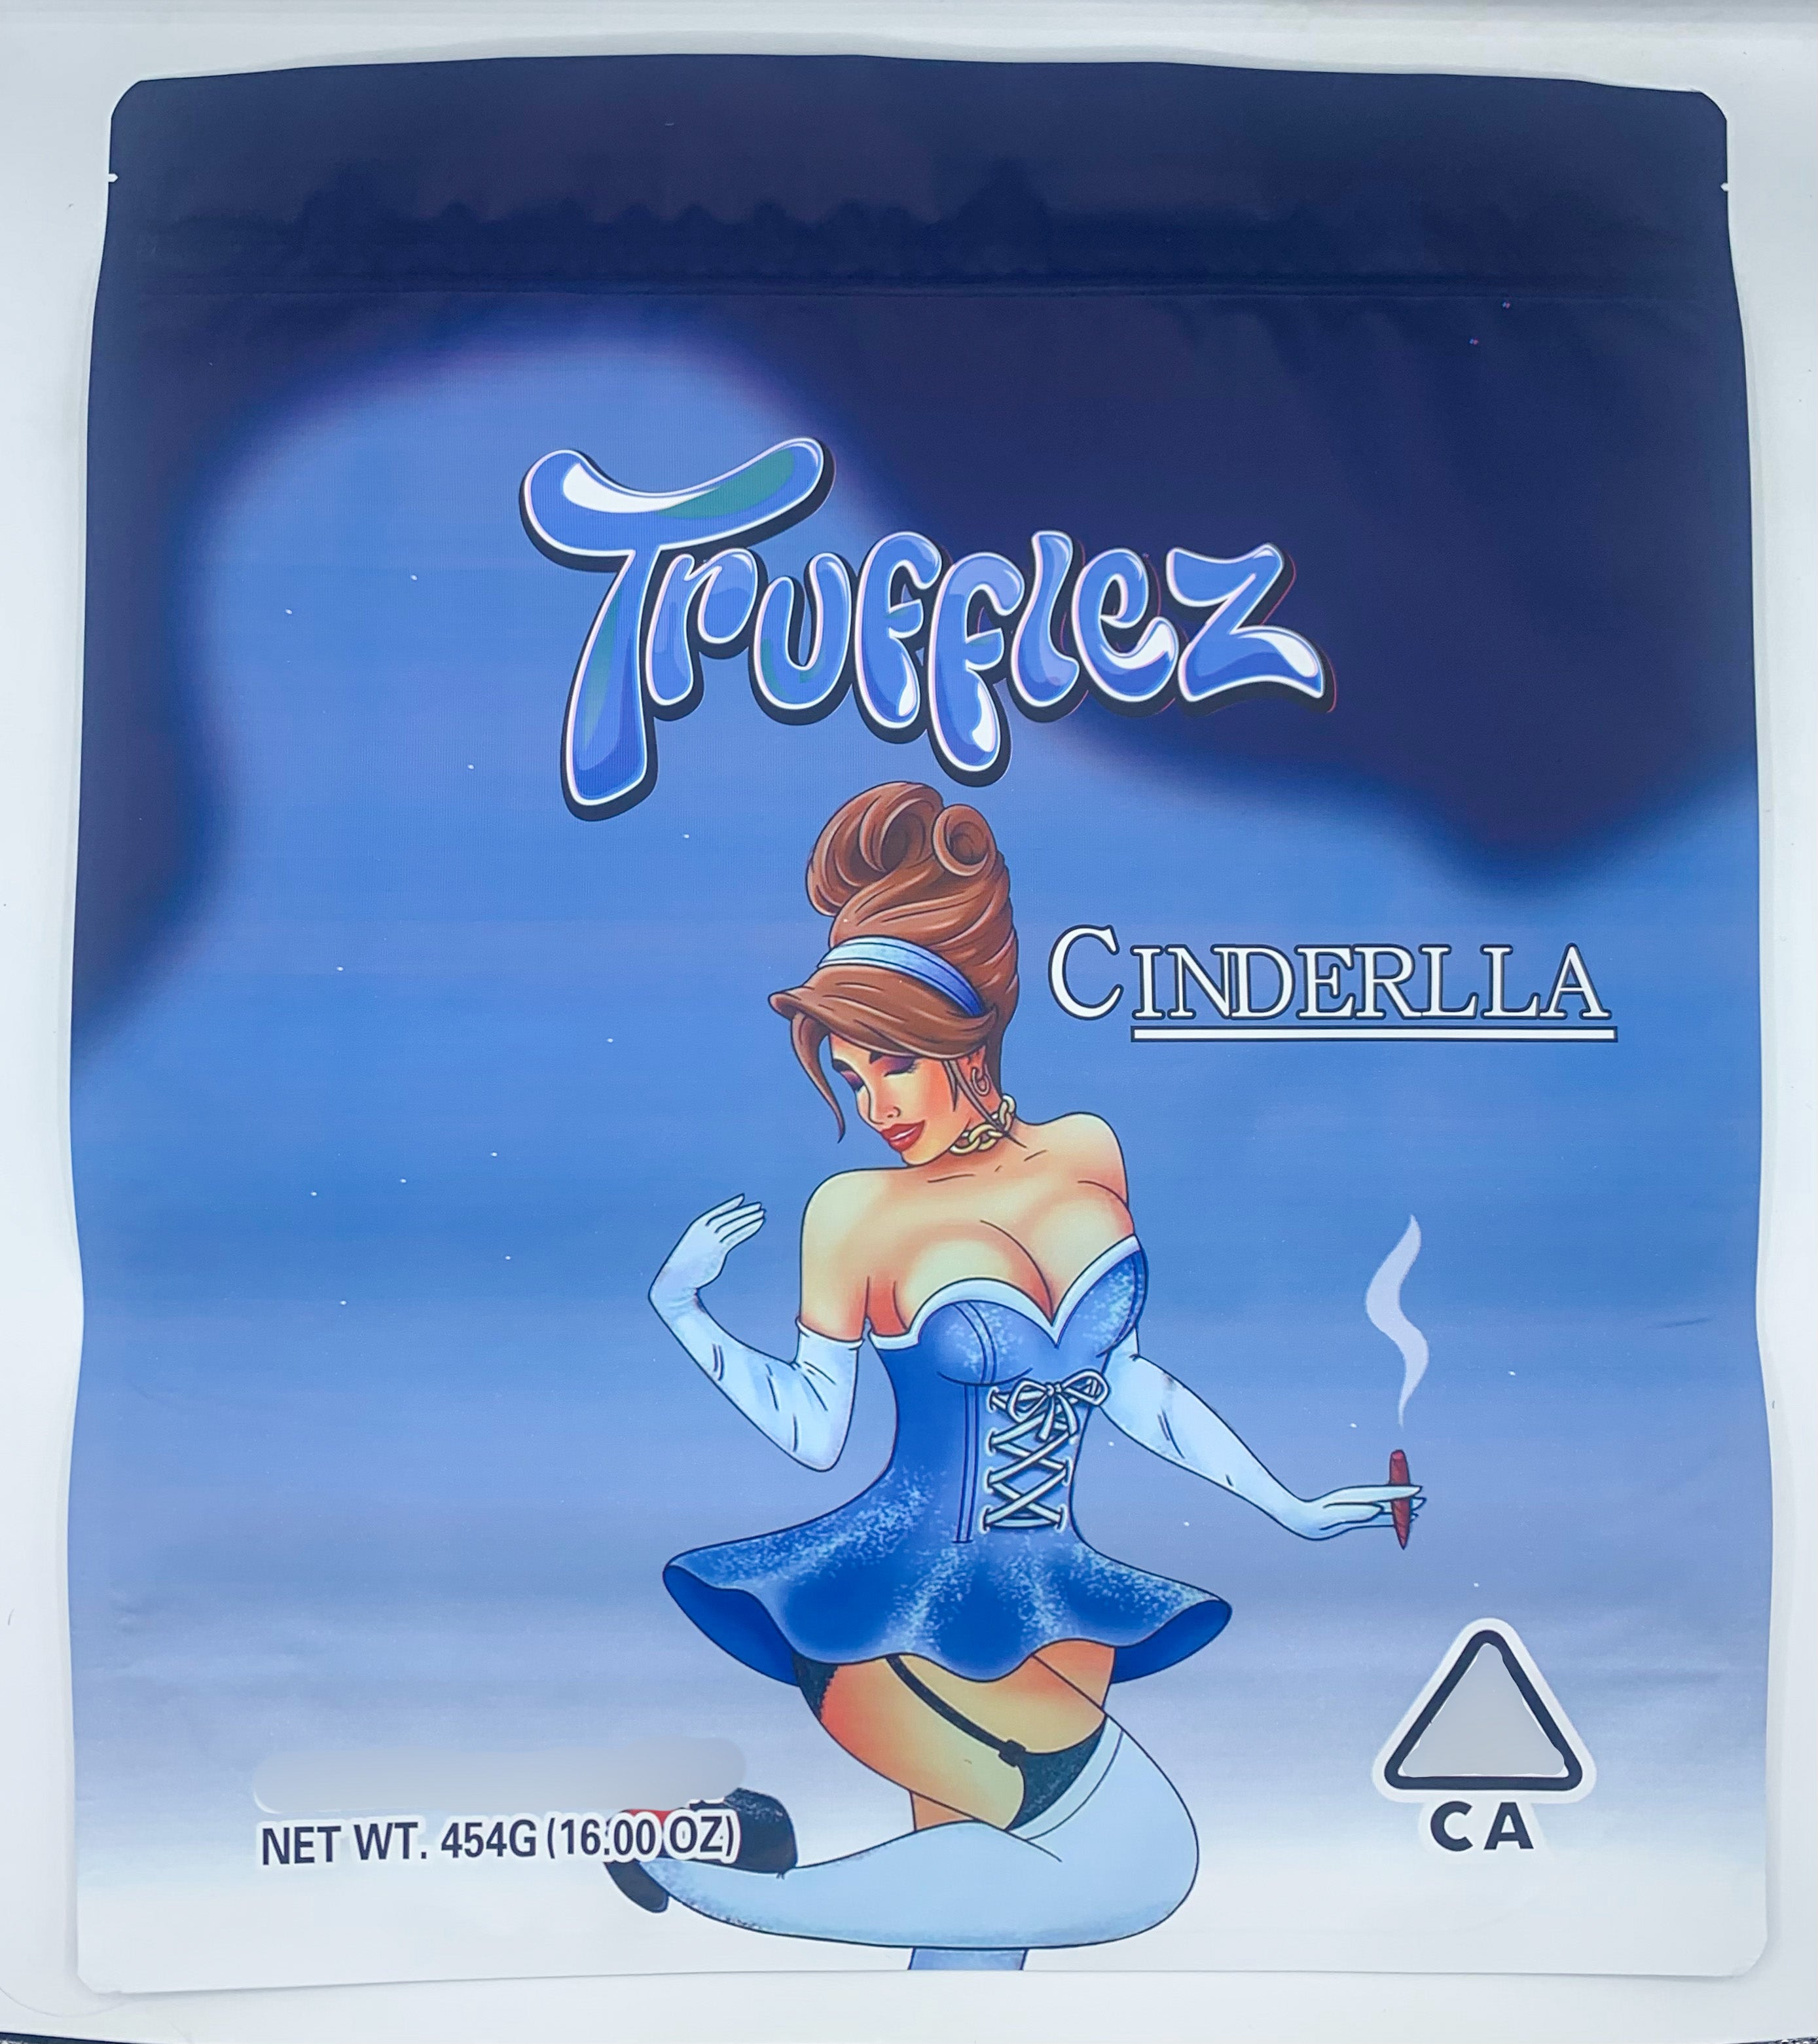 Trufflez Cinderella 1 pound (16oz) Mylar Bags